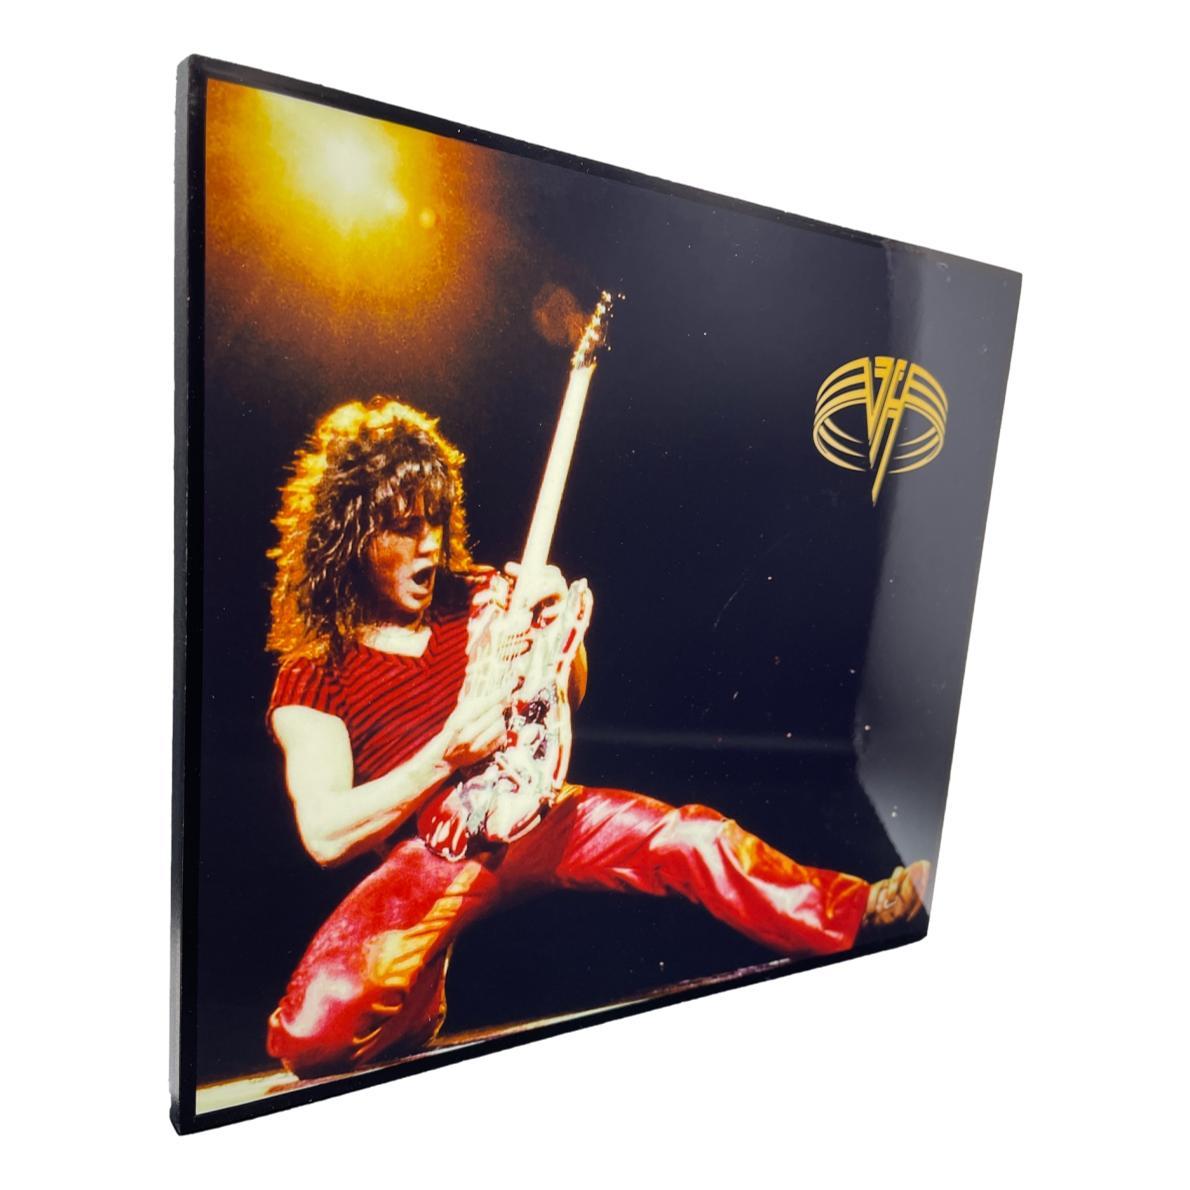 【送料無料】 ヴァン ヘイレン Van Halen アートパネル 壁掛け 据え置き 壁掛けフック付き アーティスト POPパネル インテリア アートフレーム ポスター cool クール 面白い かっこいい アート 雑貨 カフェ リビング 額付き 額縁 オシャレ ヴァンヘイレン